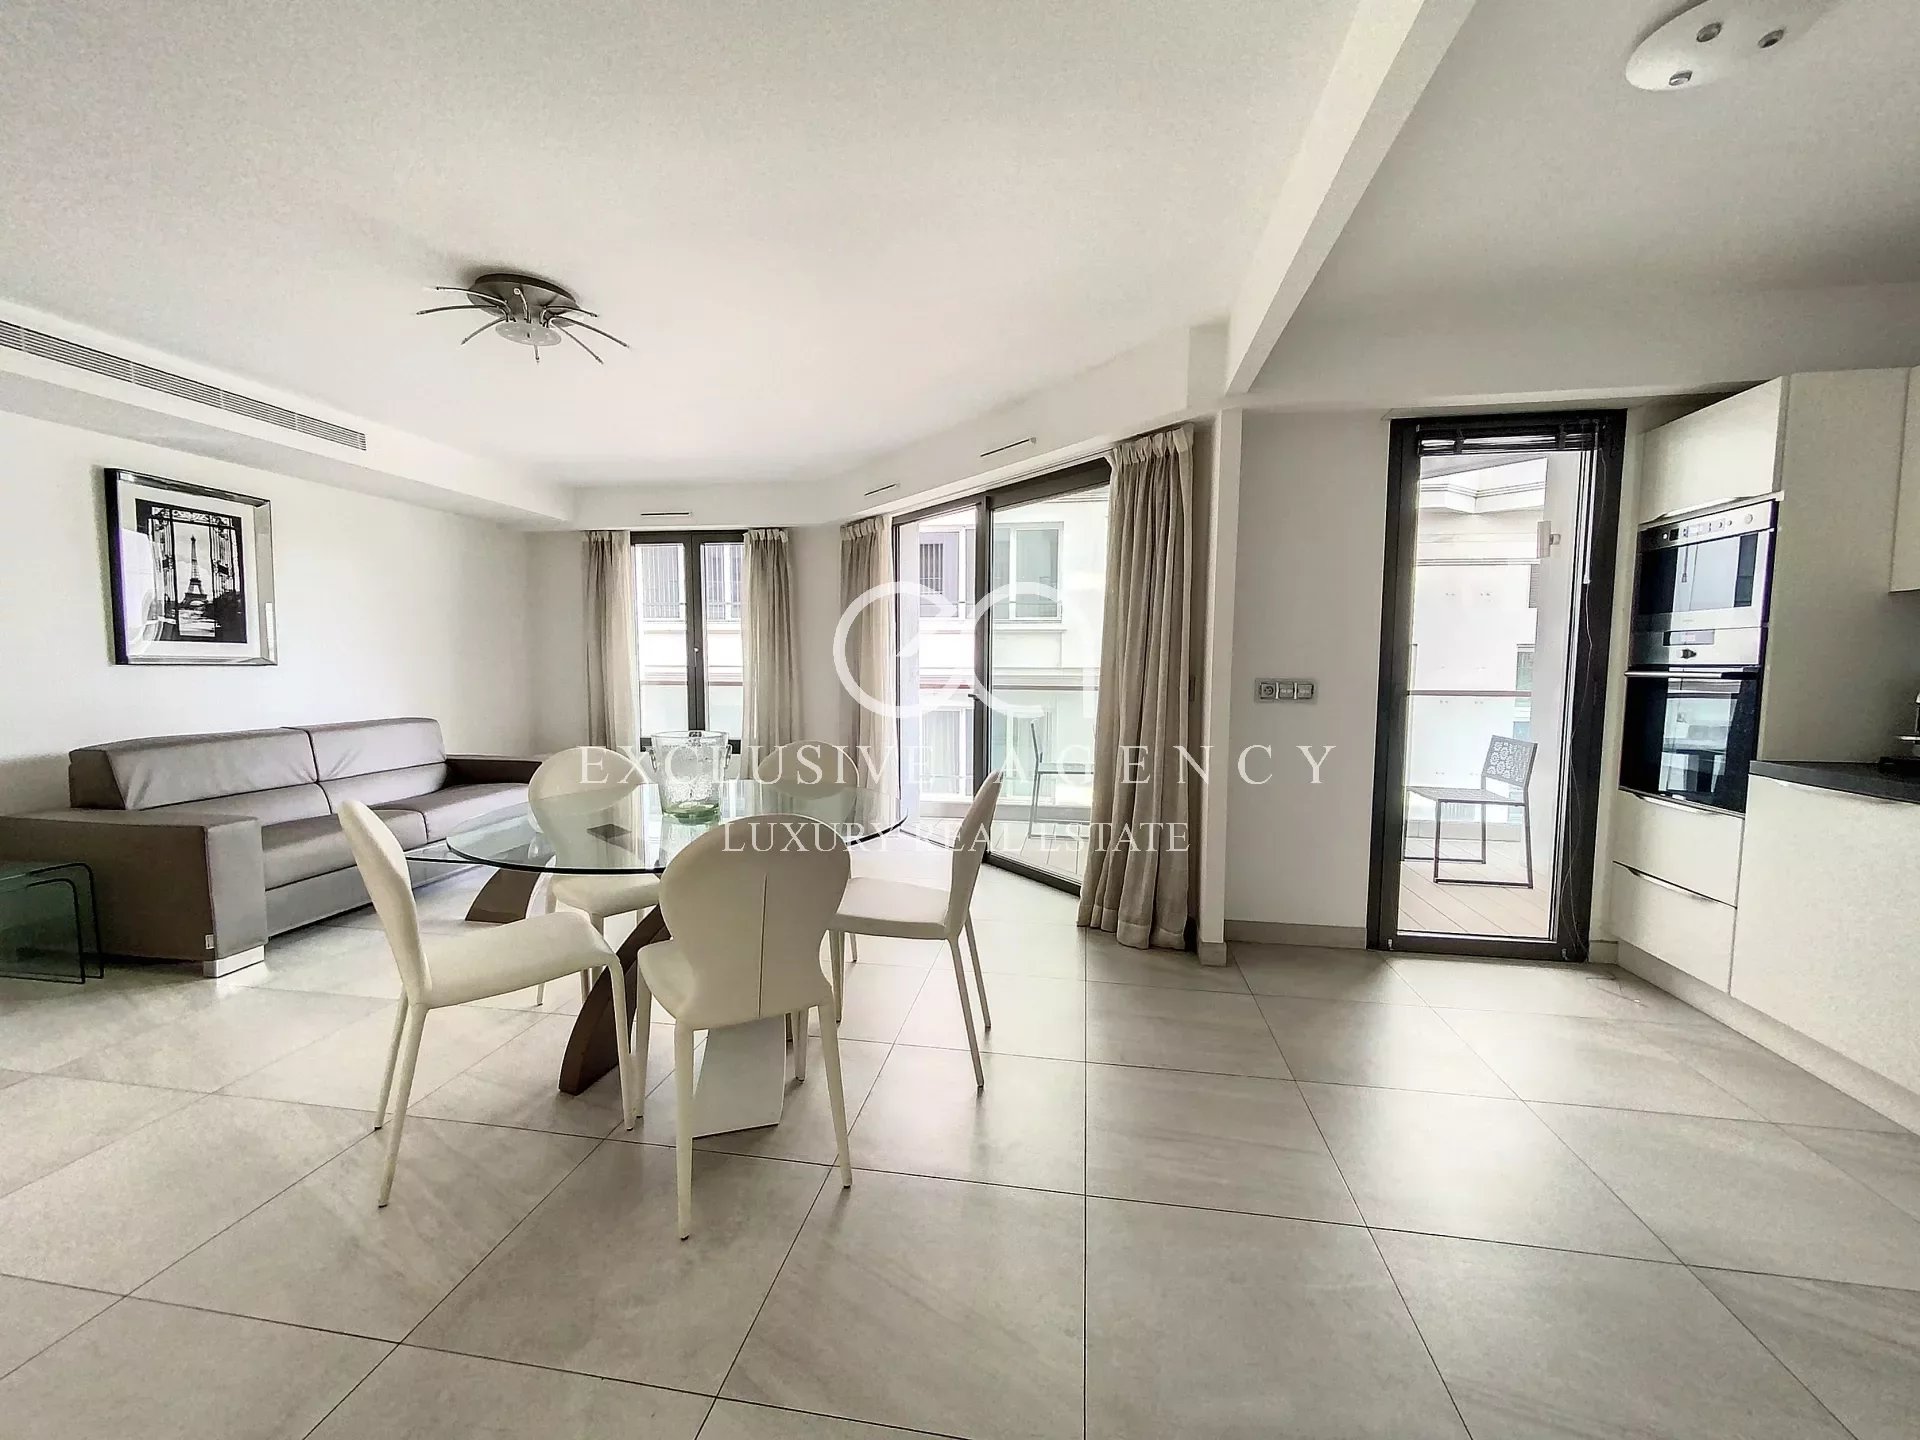 Cannes Croisette verhuur 70m² 2 slaapkamers appartement met terras